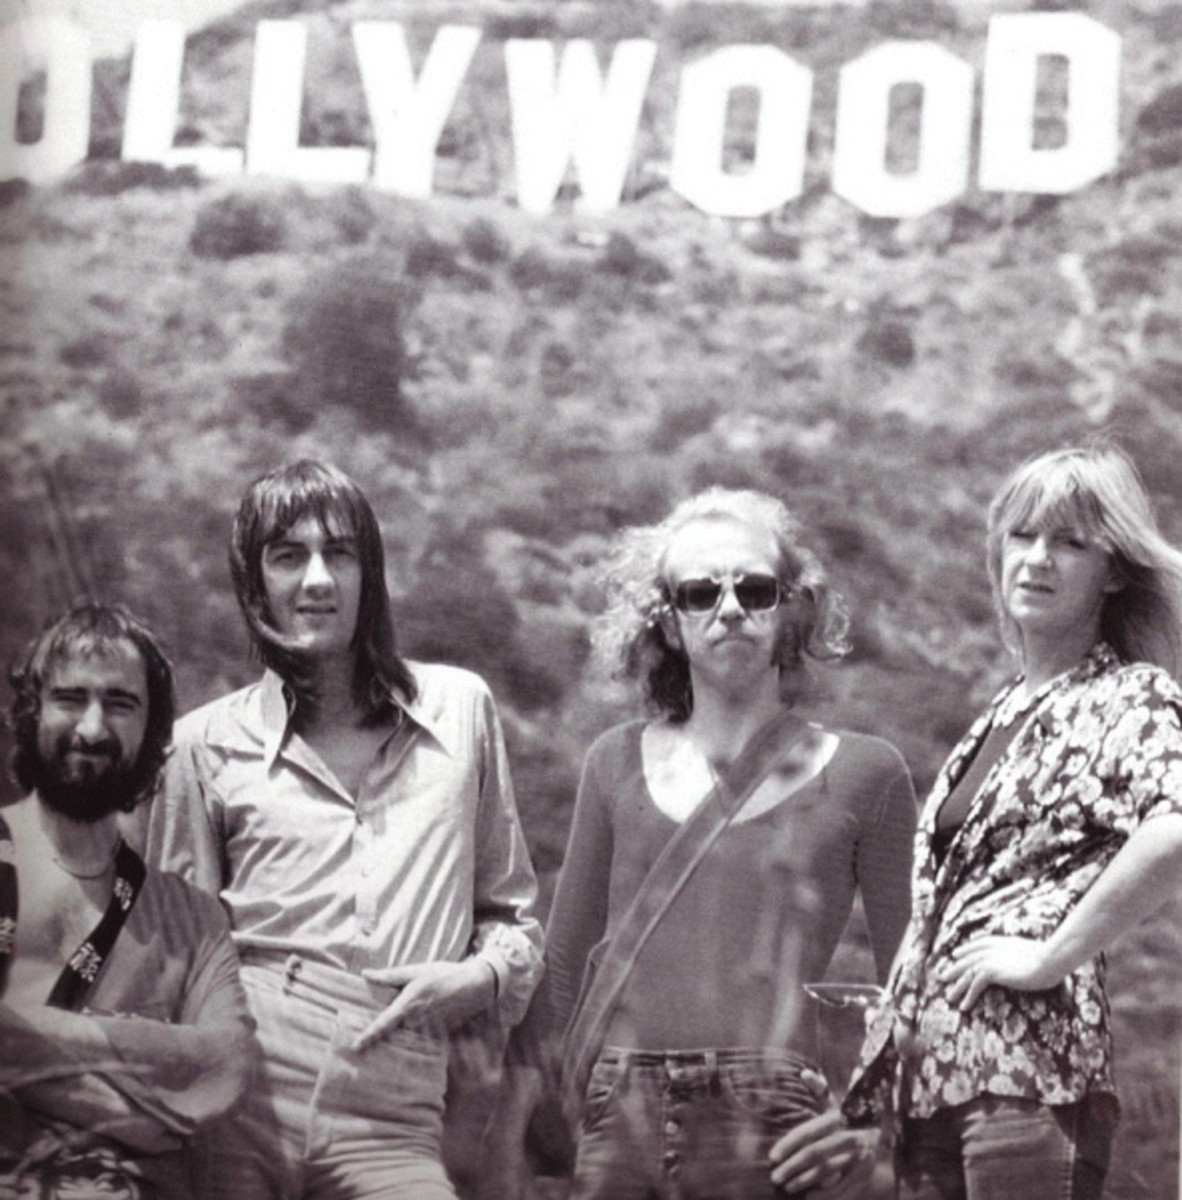 Fleetwood Mac 1974 publicity photo